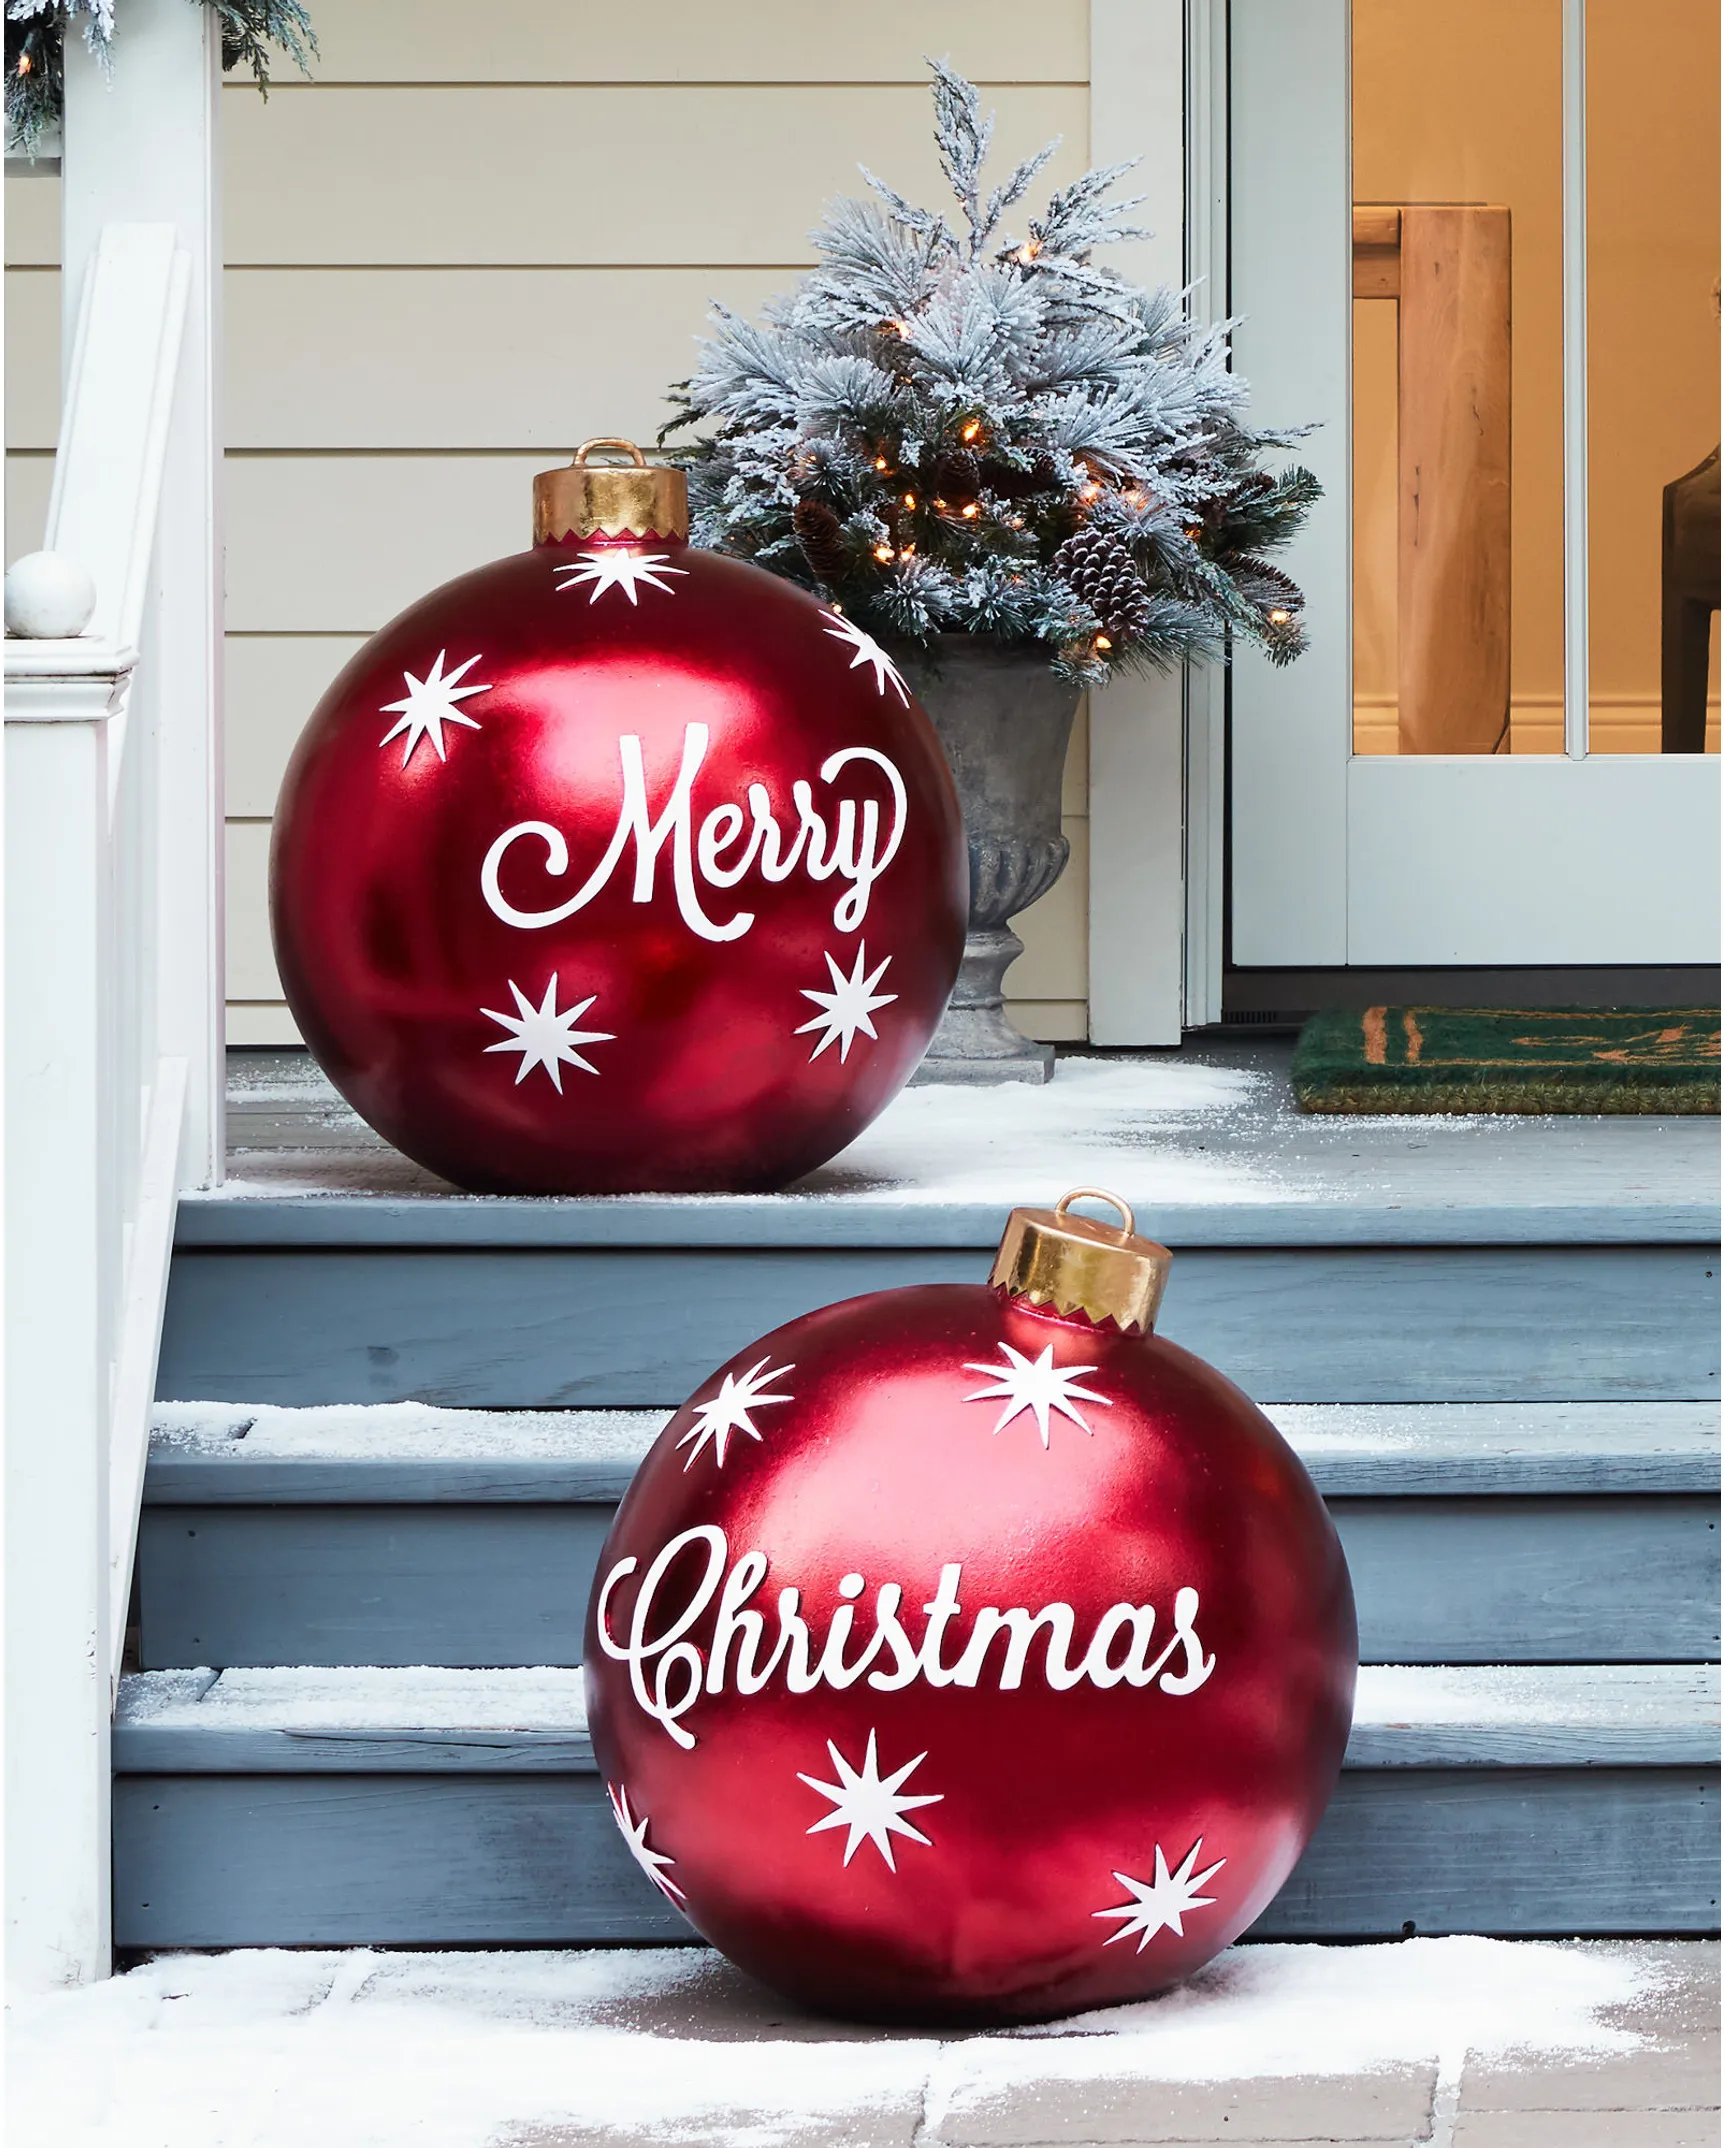 https://source.widen.net/content/po3umnhjcc/webp/OUT-1641000_Outdoor-Merry-Christmas-Ornaments-Set-of-2_Lifestyle-15.webp?position=c&color=ffffffff&quality=80&u=7mzq6p&w=862&h=1074&retina=true